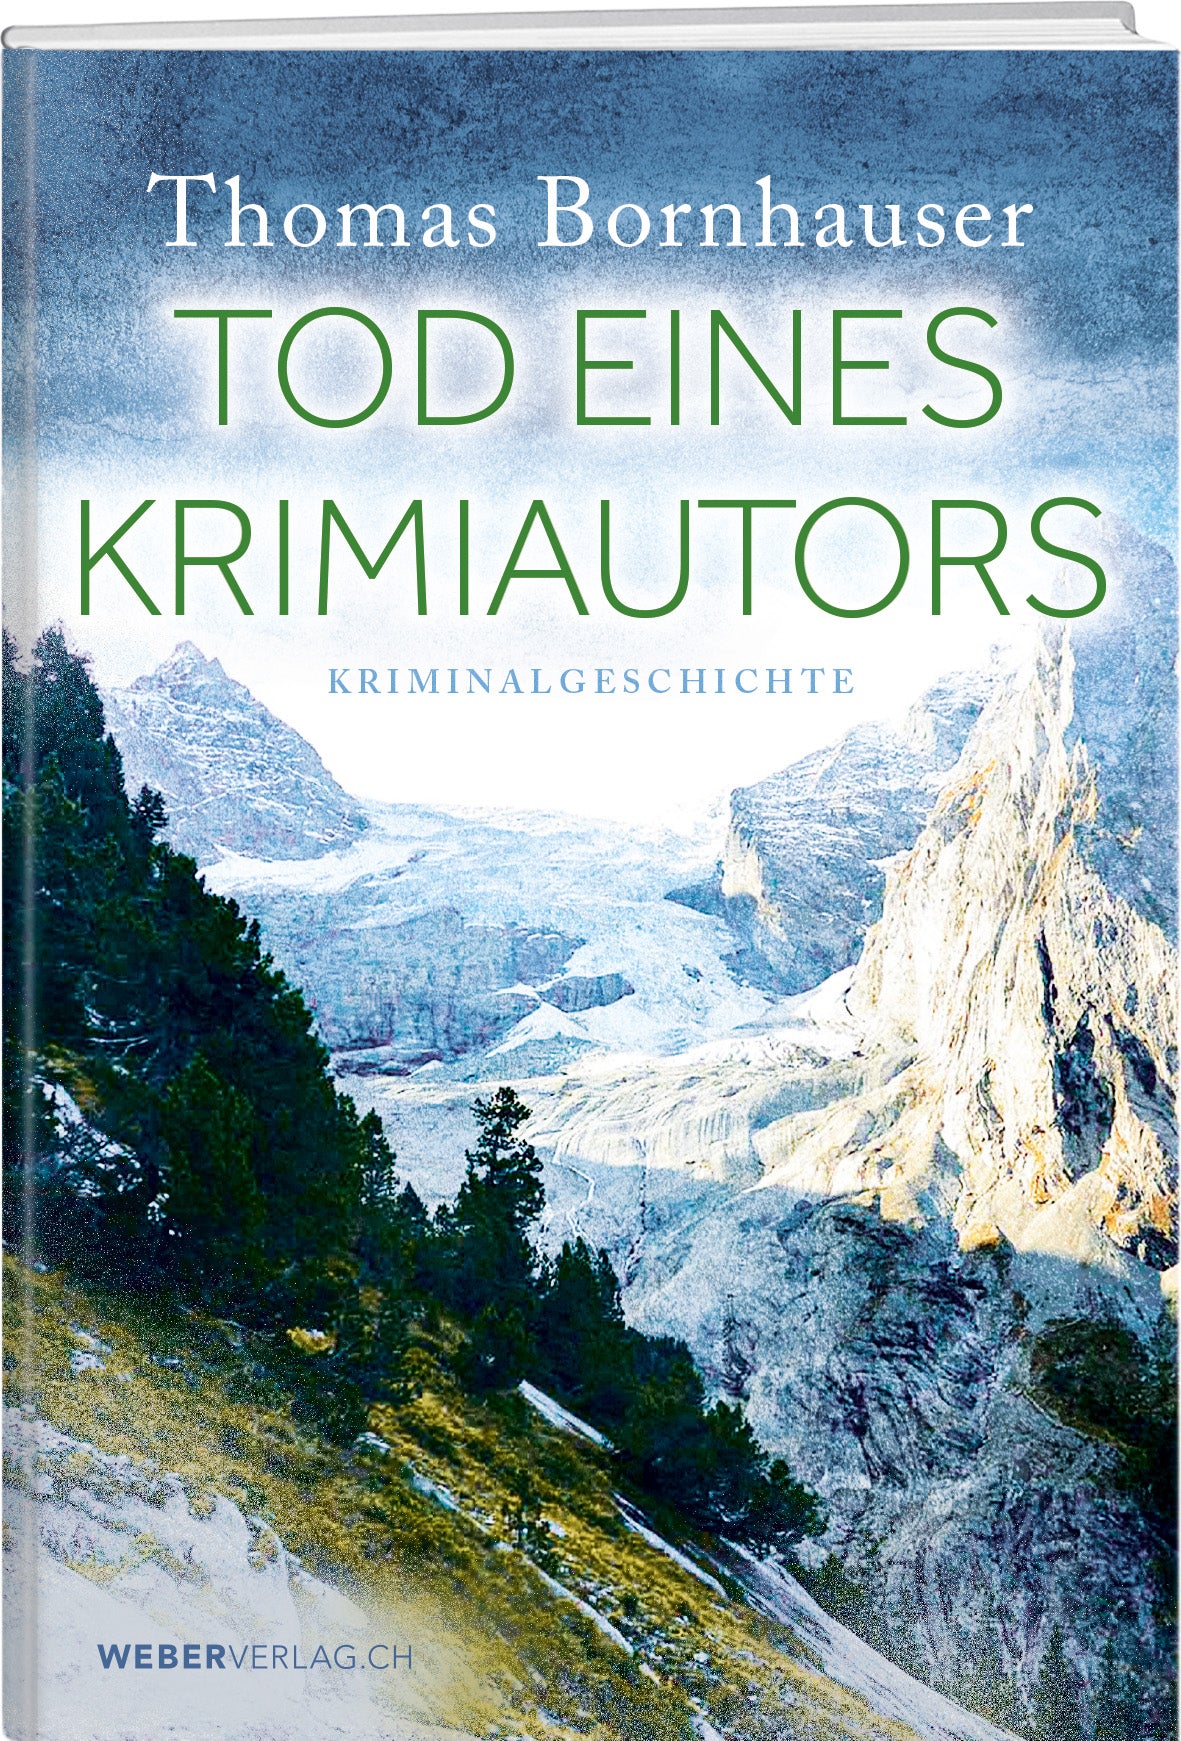 Thomas Bornhauser | Tod eines Krimiautors - • WEBER VERLAG